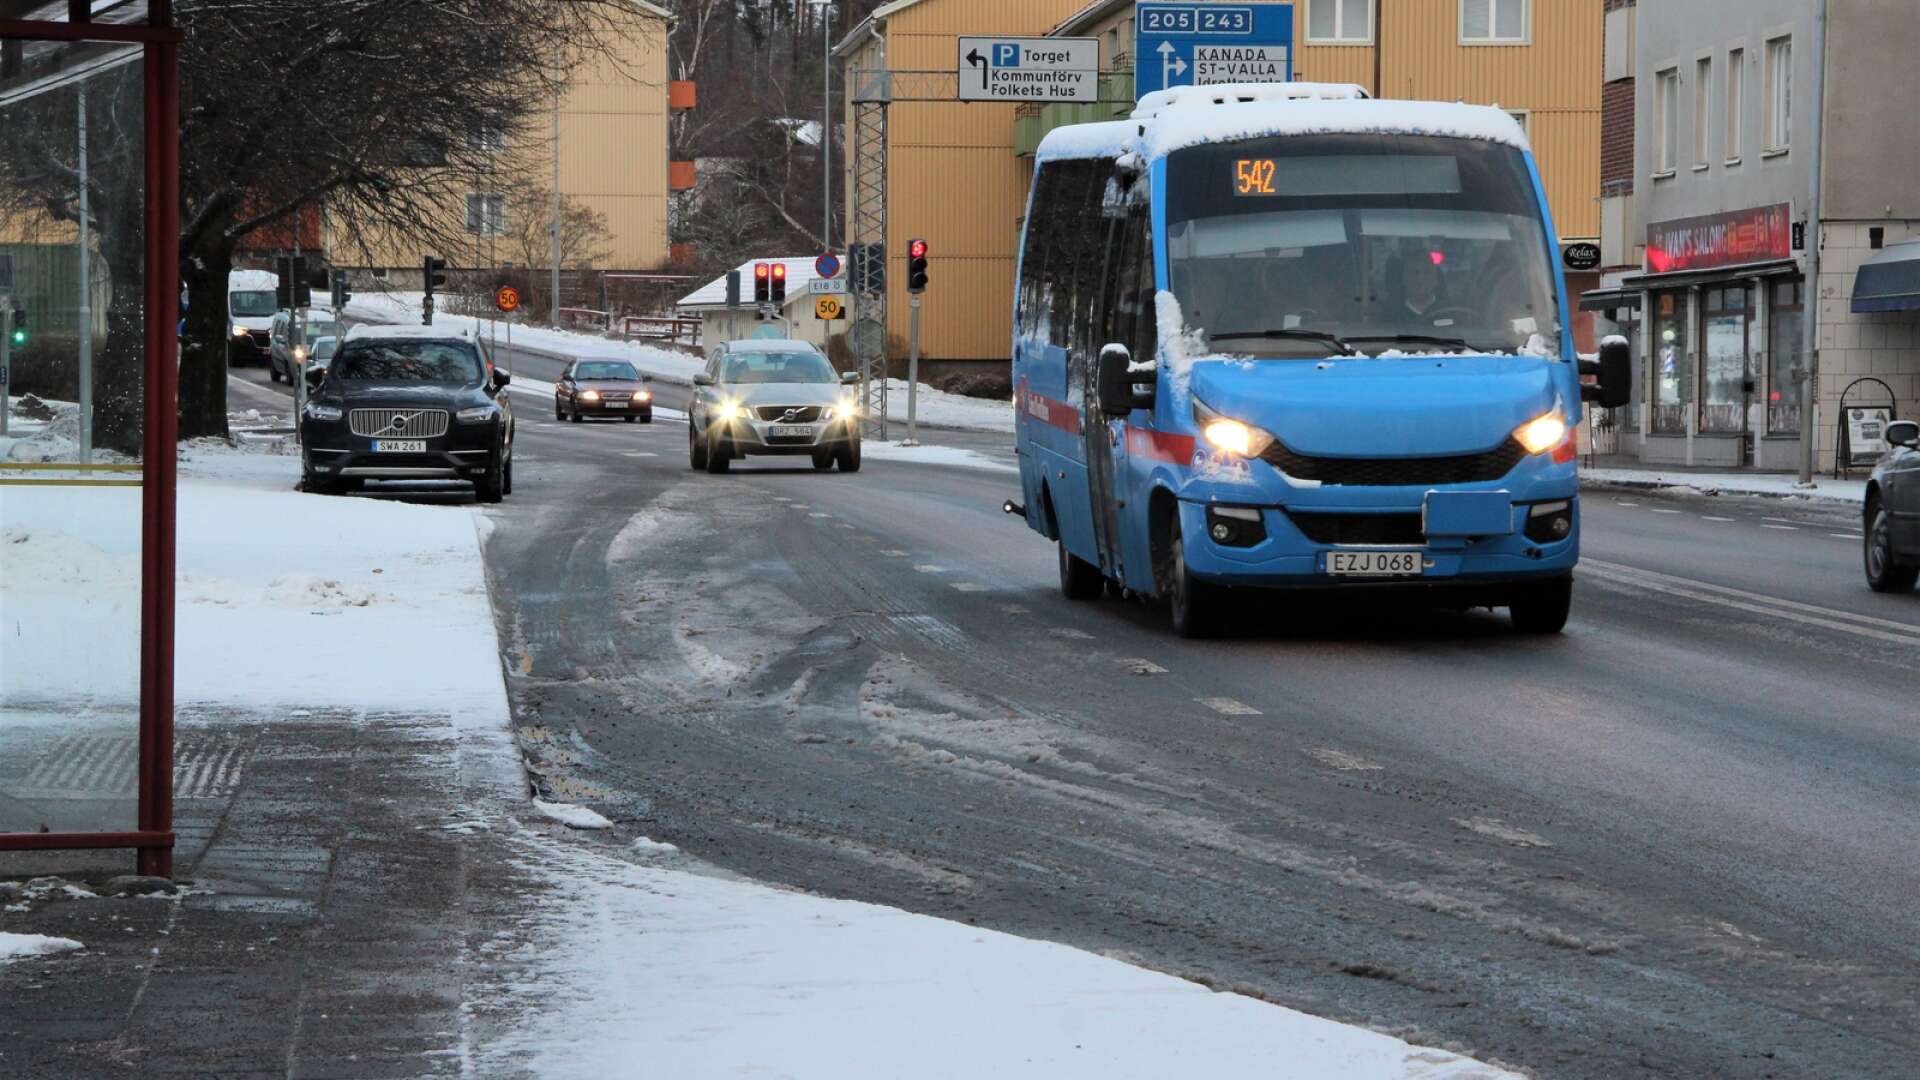 Linje 542 som går mellan Degerfors och Åtorp är en av de linjer som Länstrafiken planerat att lägga ner. Det återstår att se om den blir kvar, nu när sex miljoner kronor extra ska satsas på Länstrafiken.